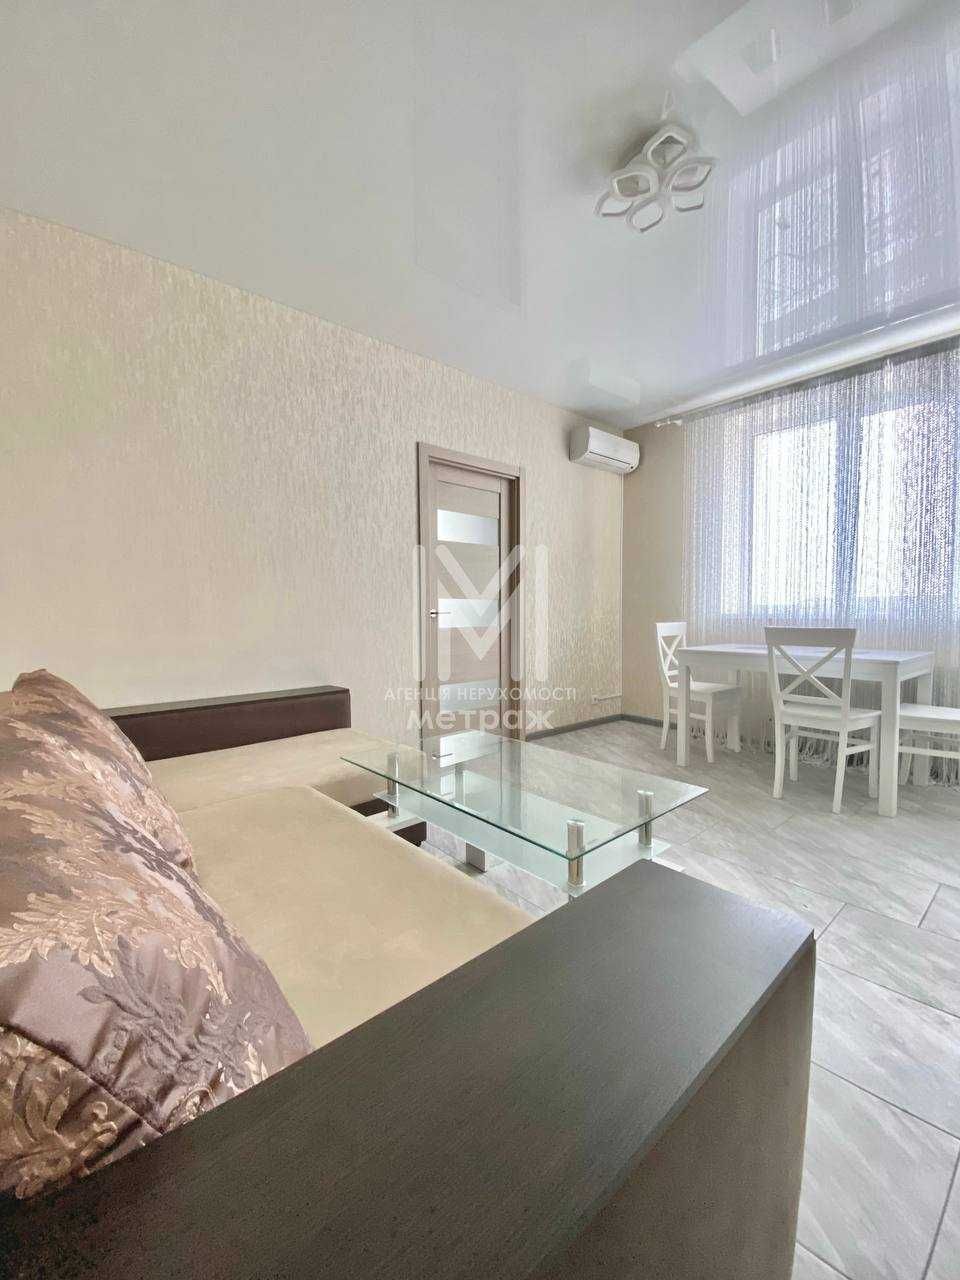 Продается уютная 2-комнатная квартира Алексеевка ( Код 16566)